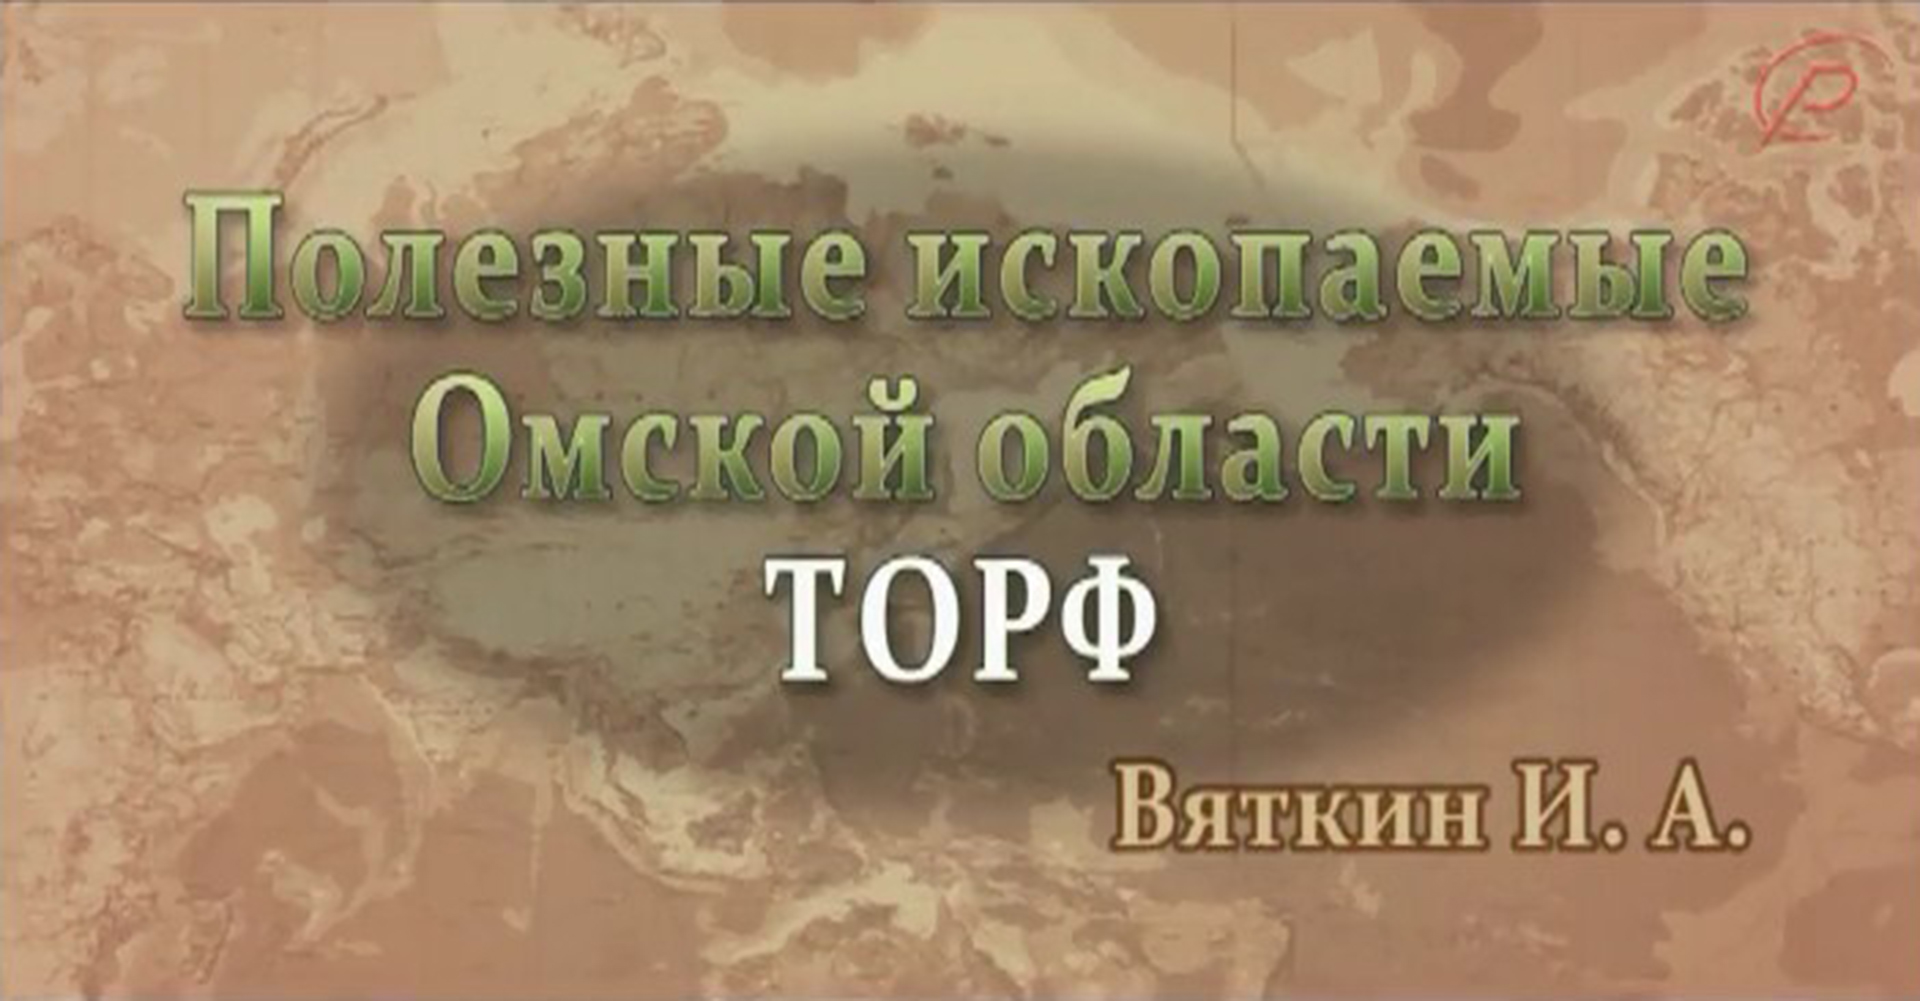 Полезные ископаемые Омской области - торф